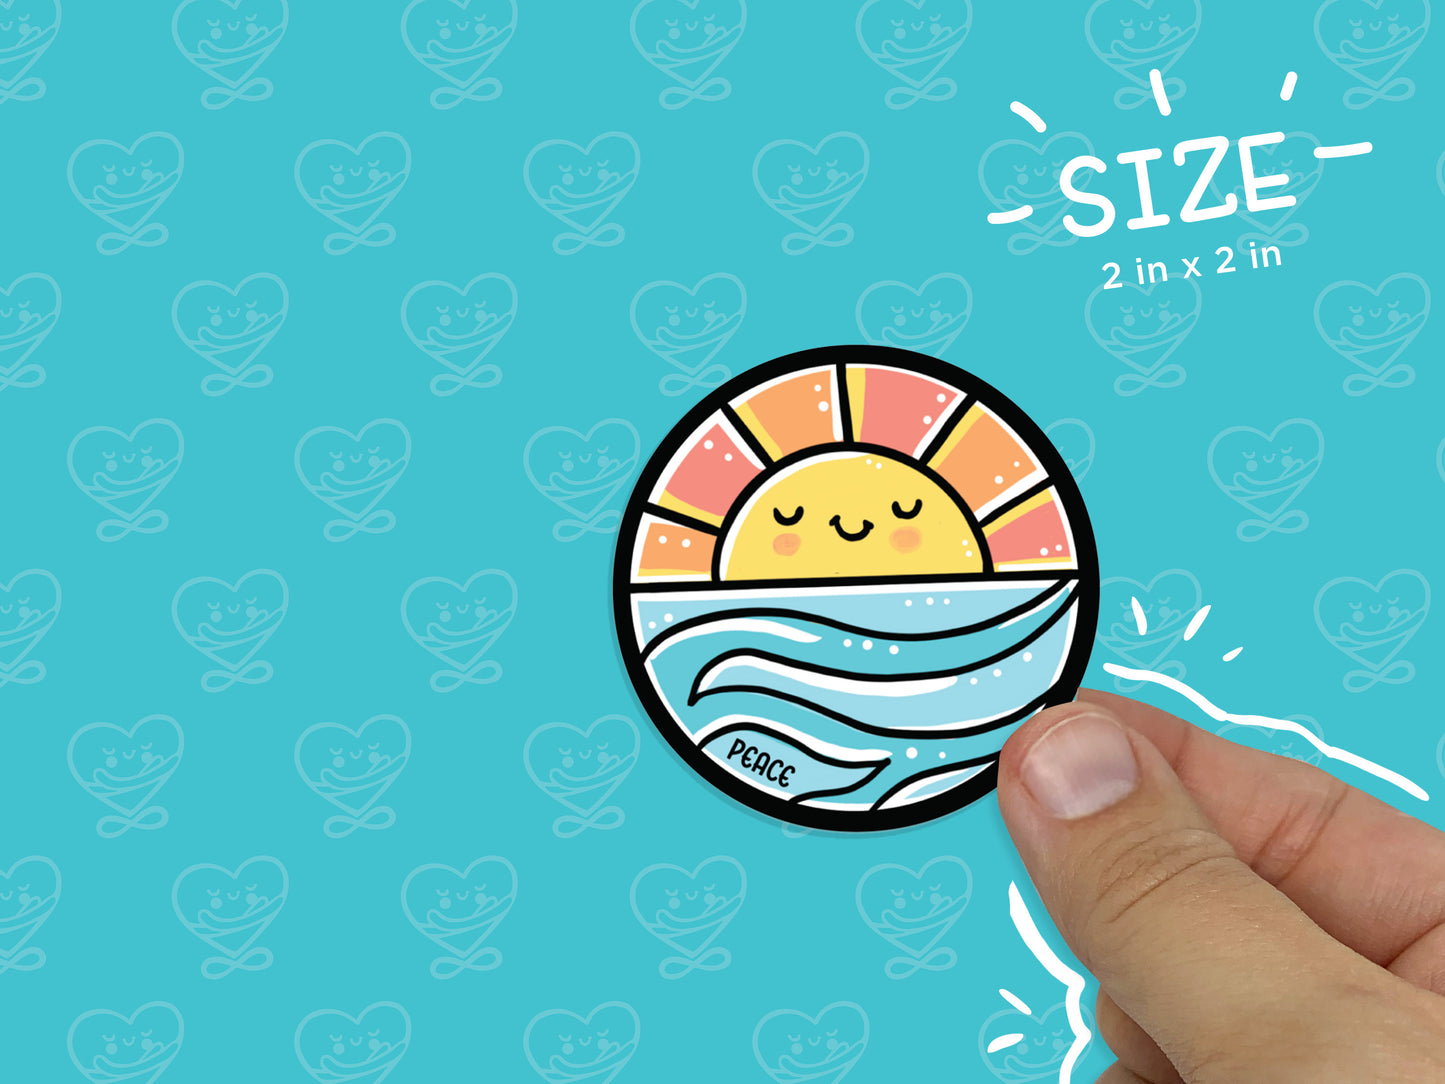 Sun & Waves Peace Sticker